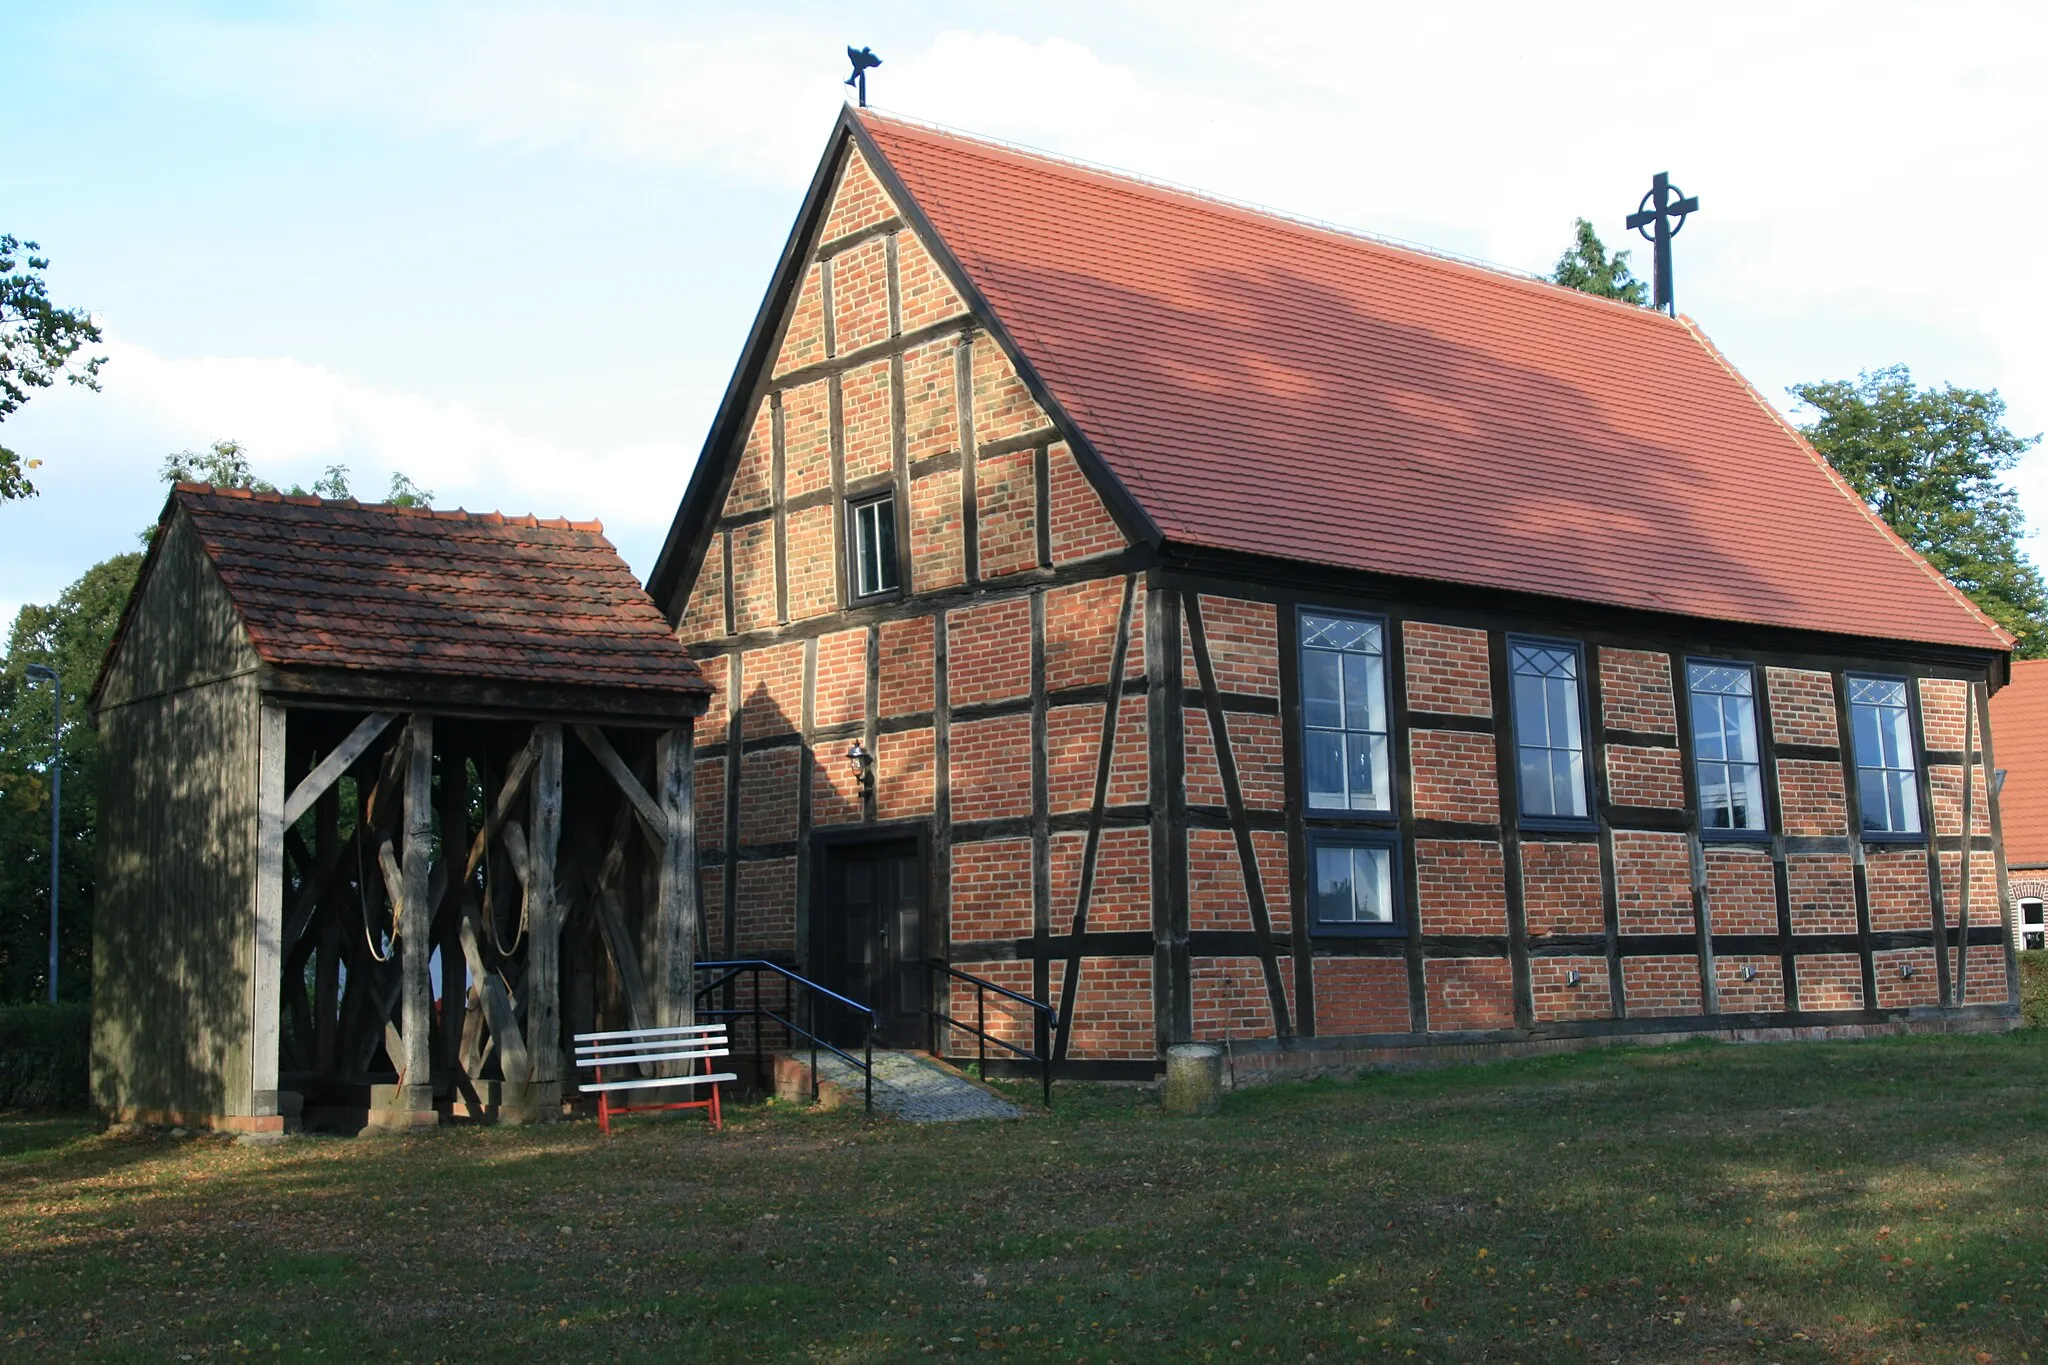 Photo showing: Die evangelische Kirche stammt aus dem 18. Jahrhundert. Der Glockenstuhl ist freistehend.
Die Kirche ist ein Fachwerkgebäude, ausgefacht mit roten Backsteinen.